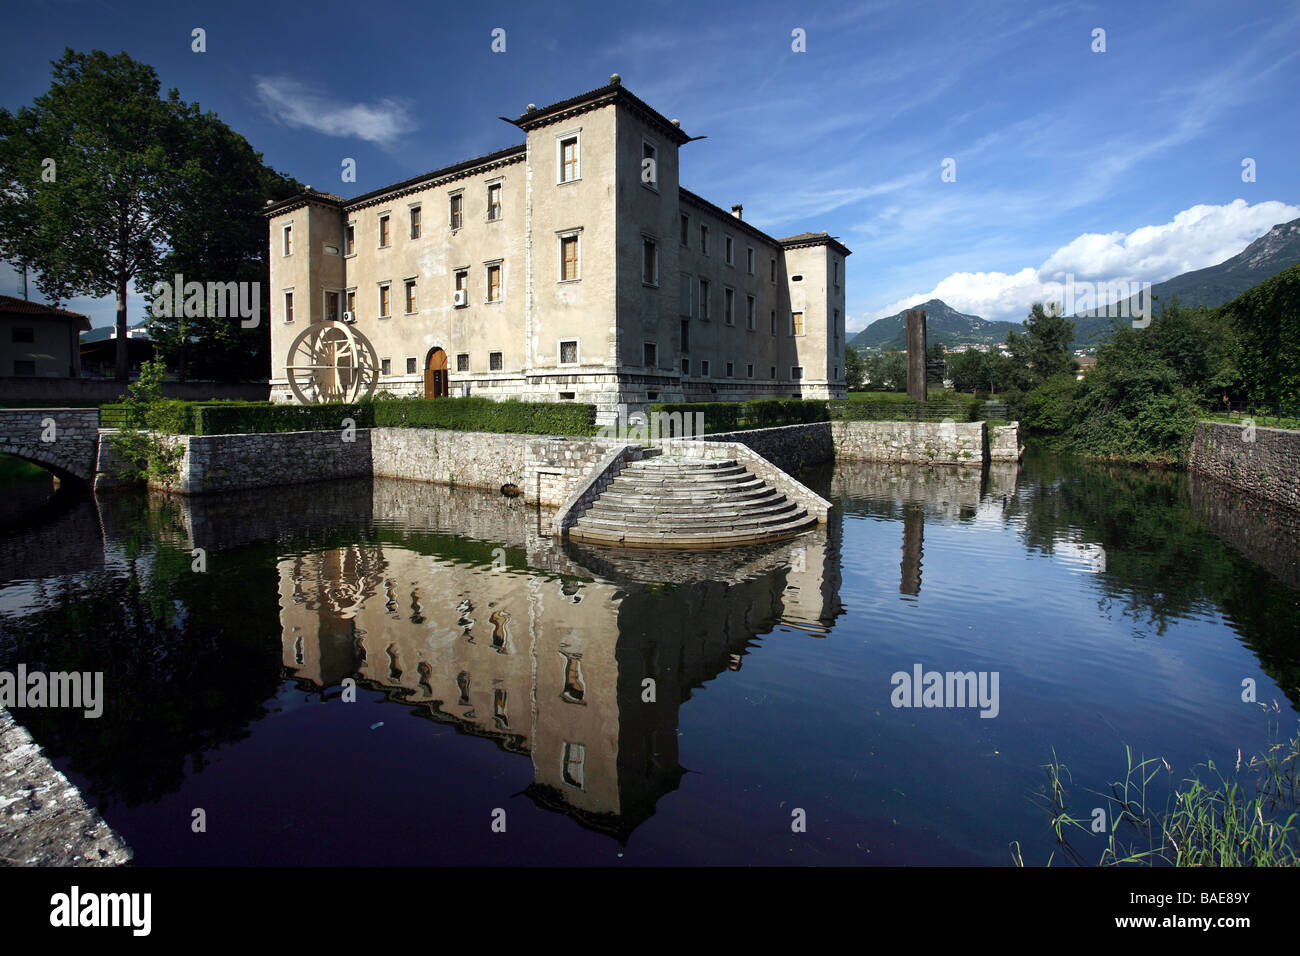 MART, Palazzo Delle Albere, Rovereto, Trentino, Italien Stockfoto